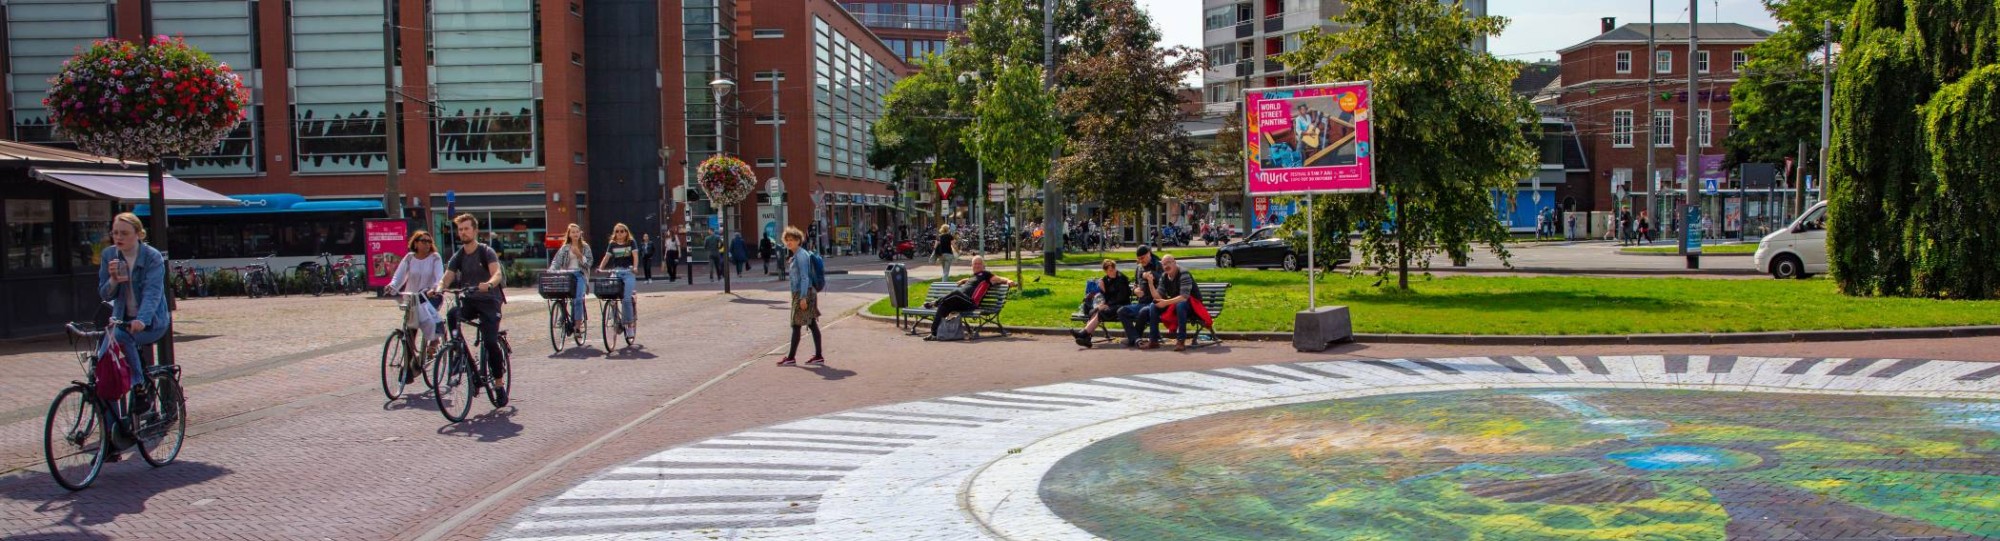 Arnhem plein in binnenstad